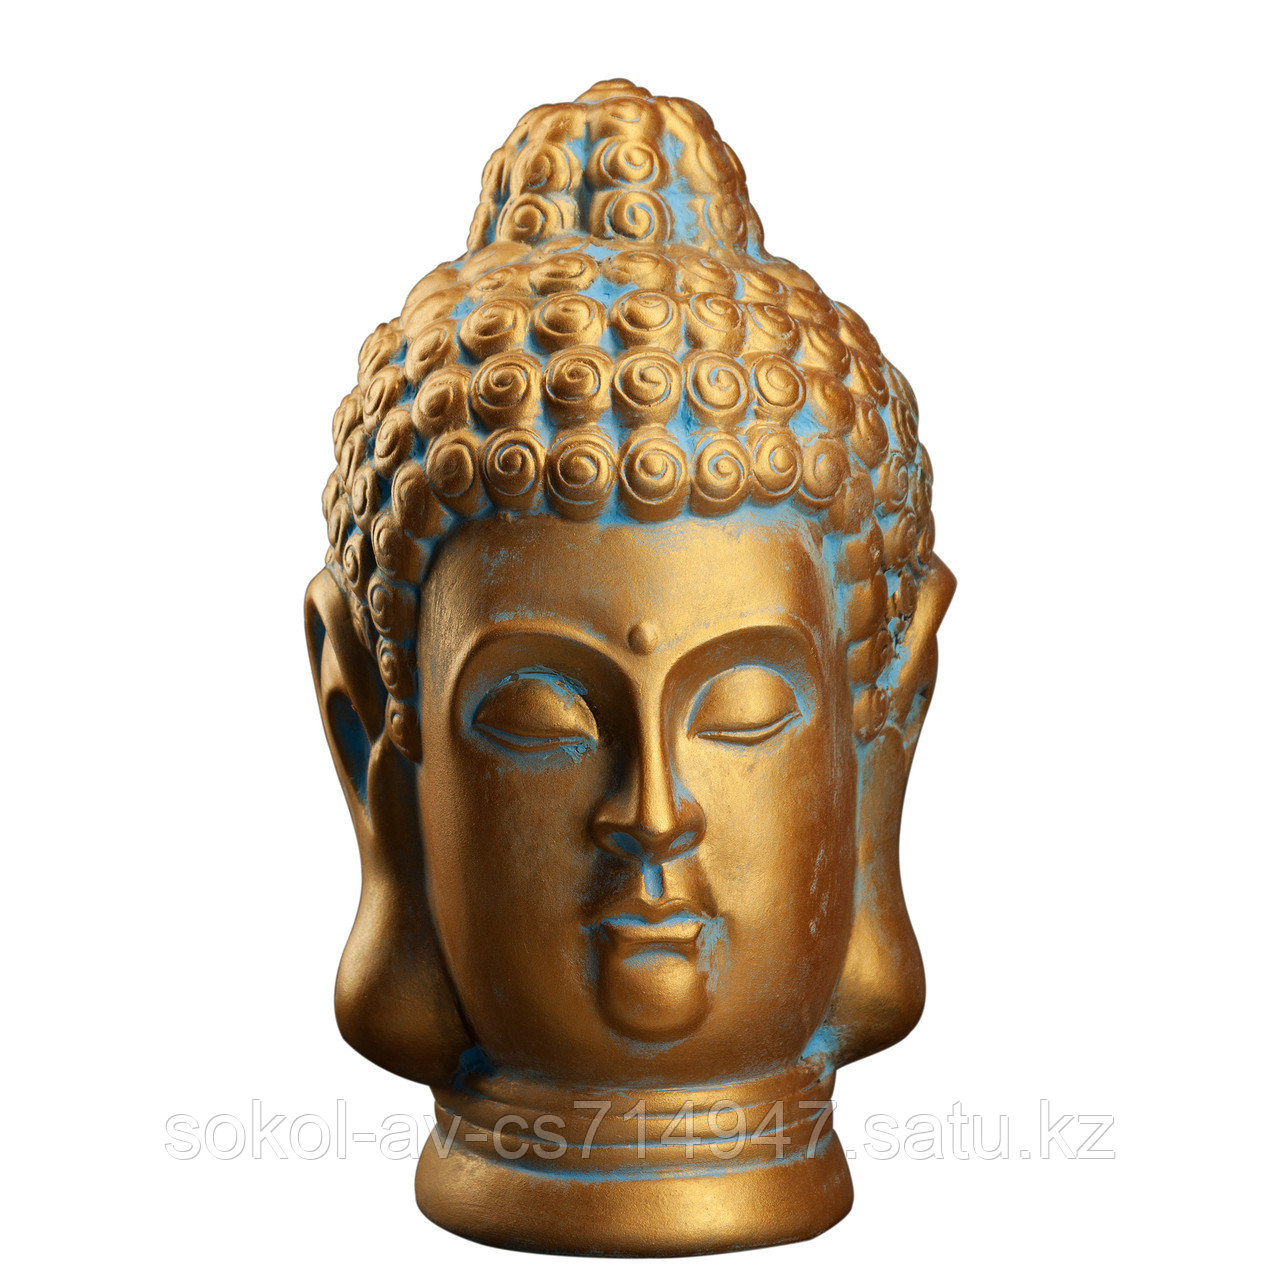 Статуэтка Будда The Buddha, подарок буддисту, керамика, 31*19*19 см, золот